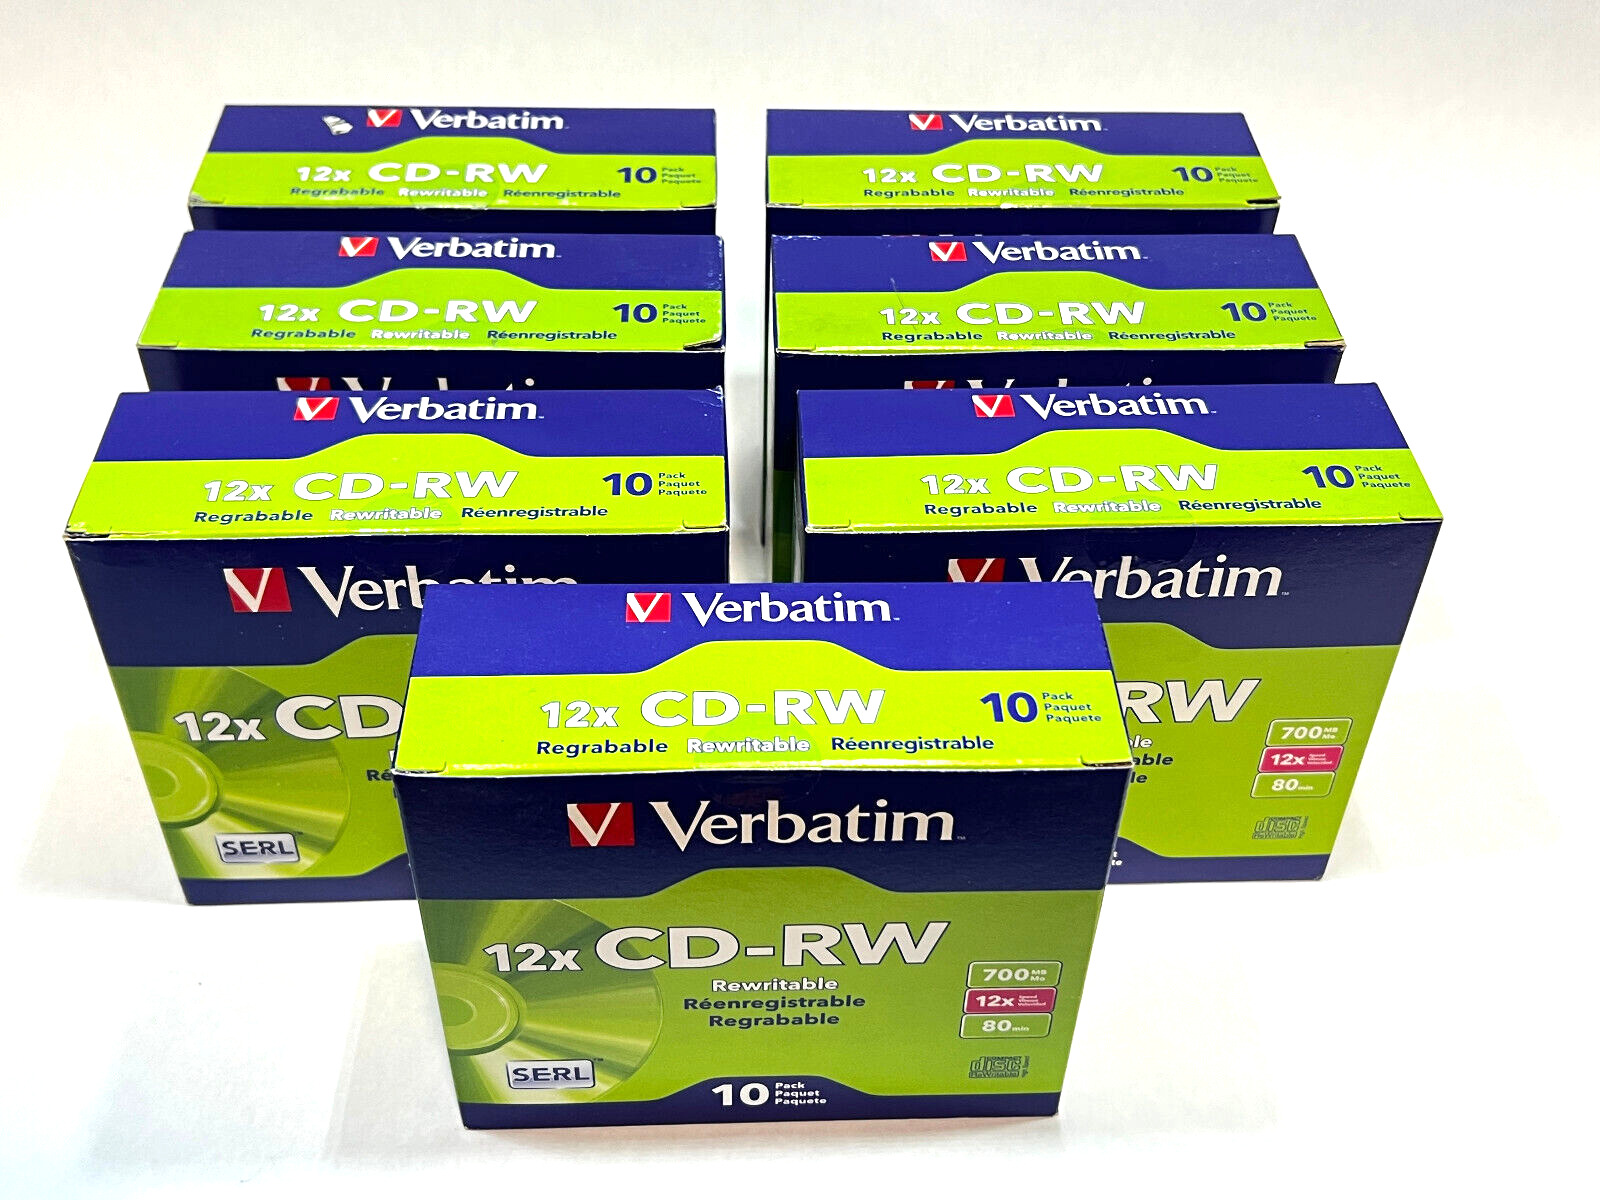 Lot of 70x Verbatim 12x Cd-RW Media - 700mb - 120mm Standard - 10 Pack Slim Case